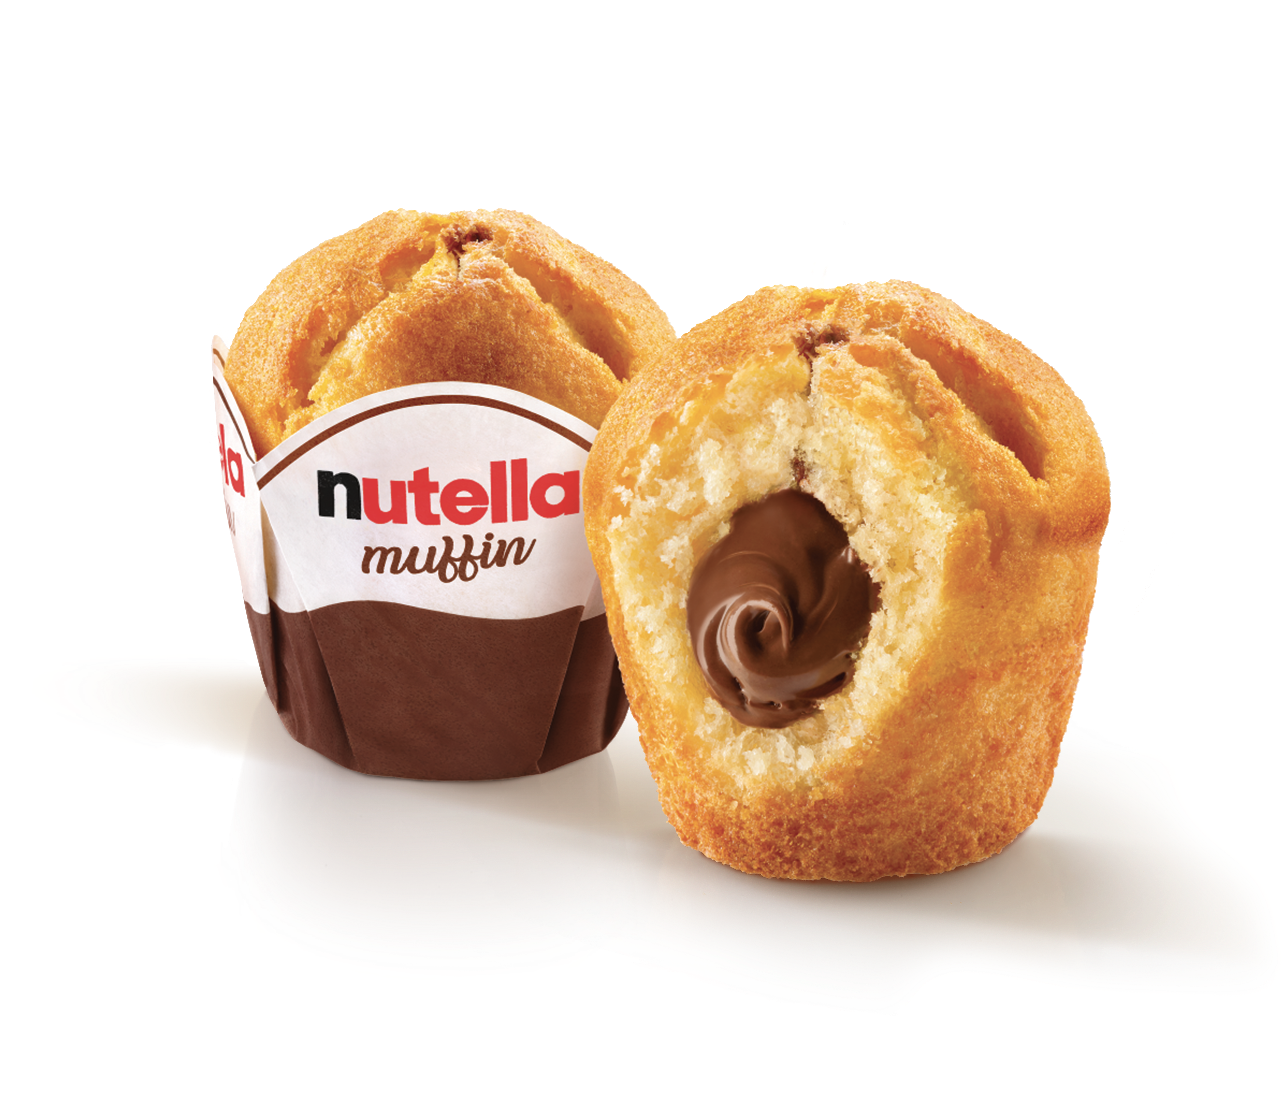 The Nutella Muffin